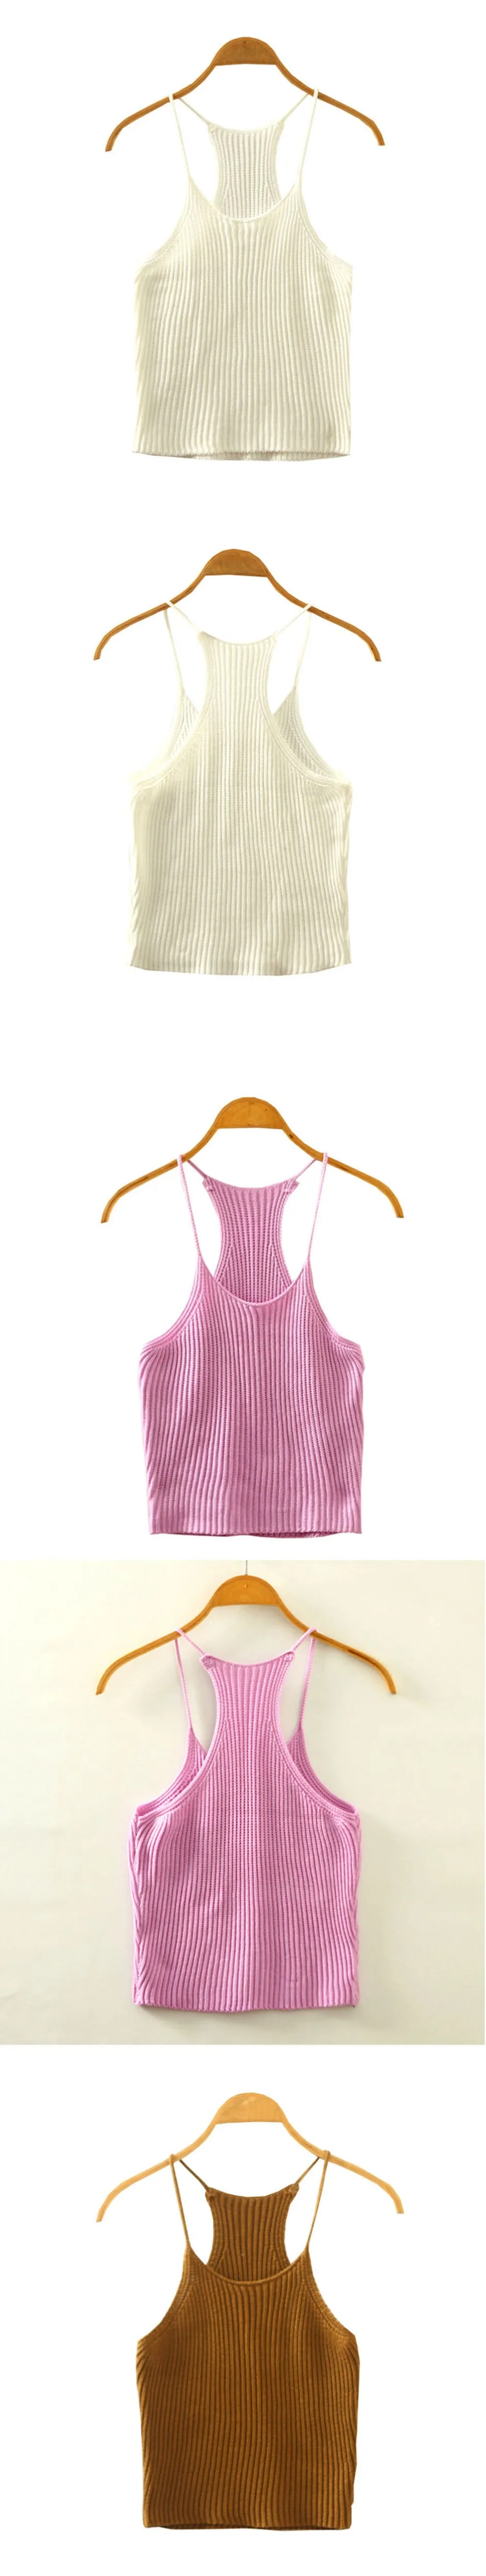 Для женщин летние трикотажные бюстье короткий топ сексуальный без рукавов стрейч Повседневное укороченные пляжные Блузы Tanks camis Новая одежда 9 Цвета